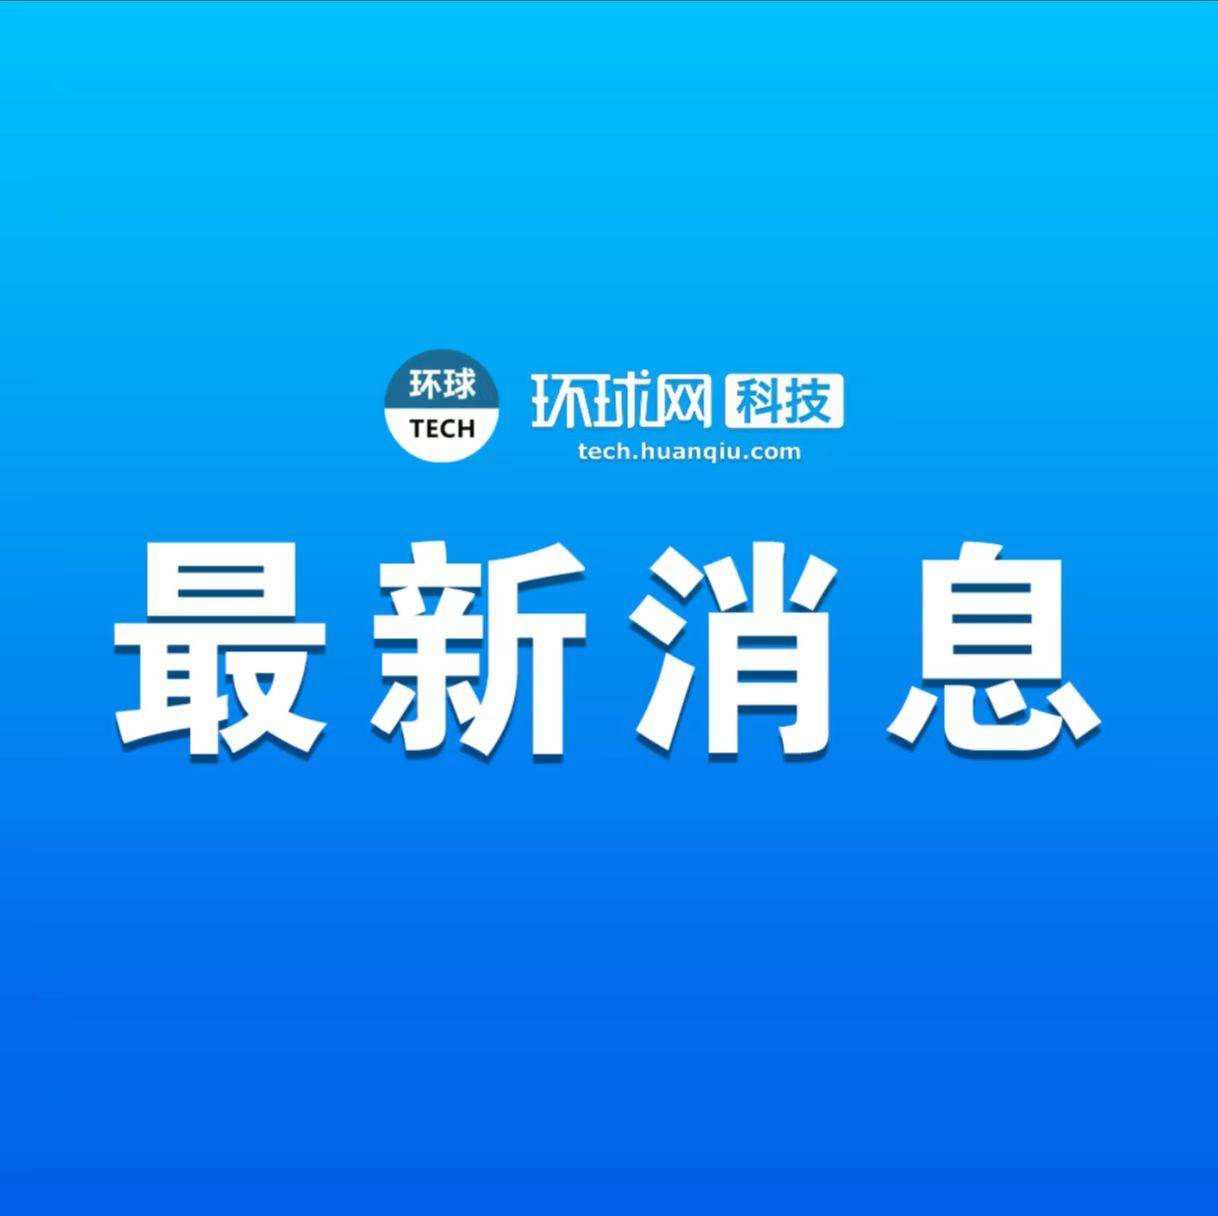 小鹏成立鹏慧汽车科技公司 注册本钱50亿元